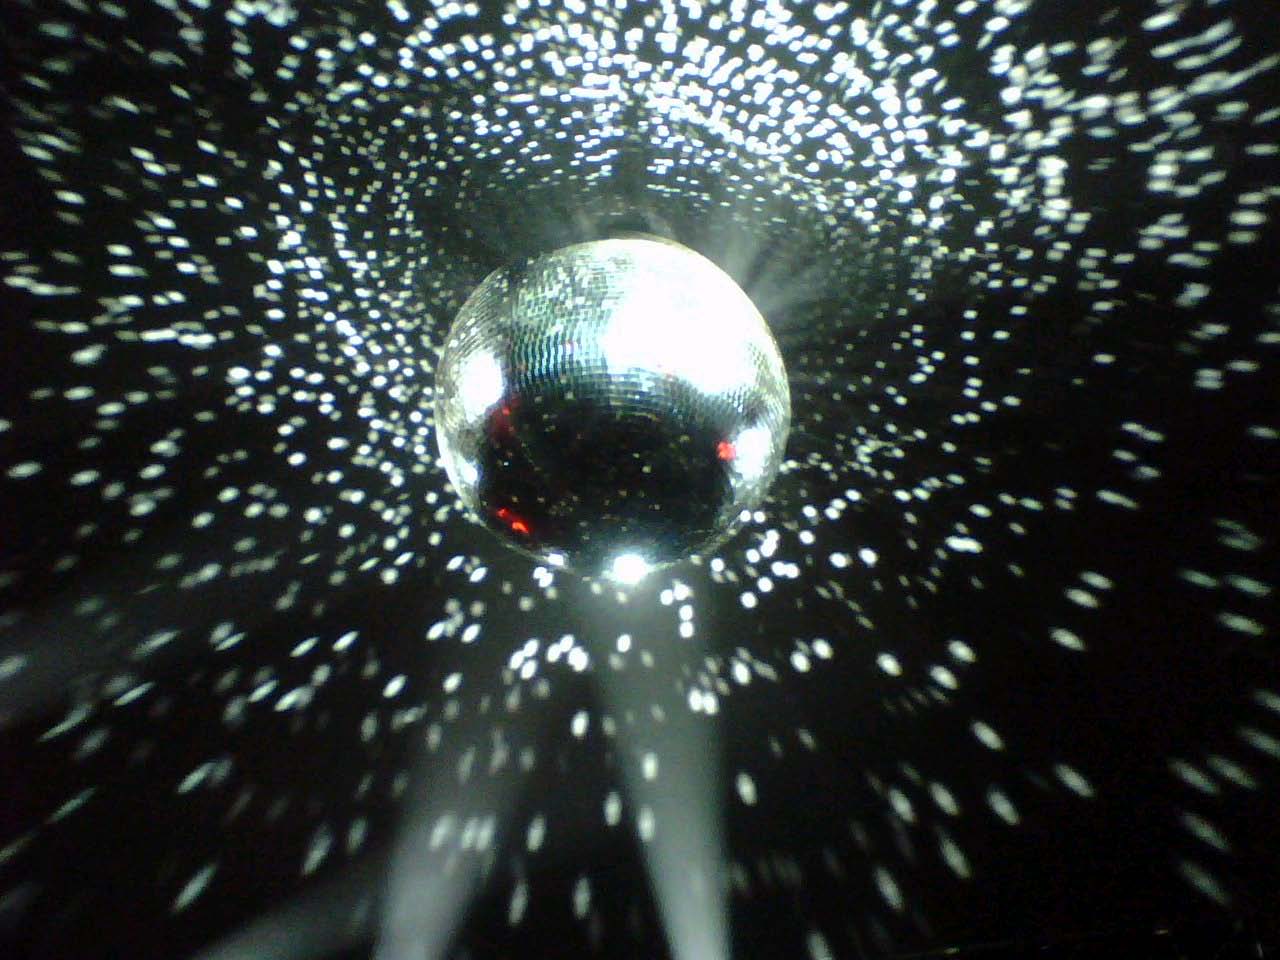 Disco Ball Wallpaper